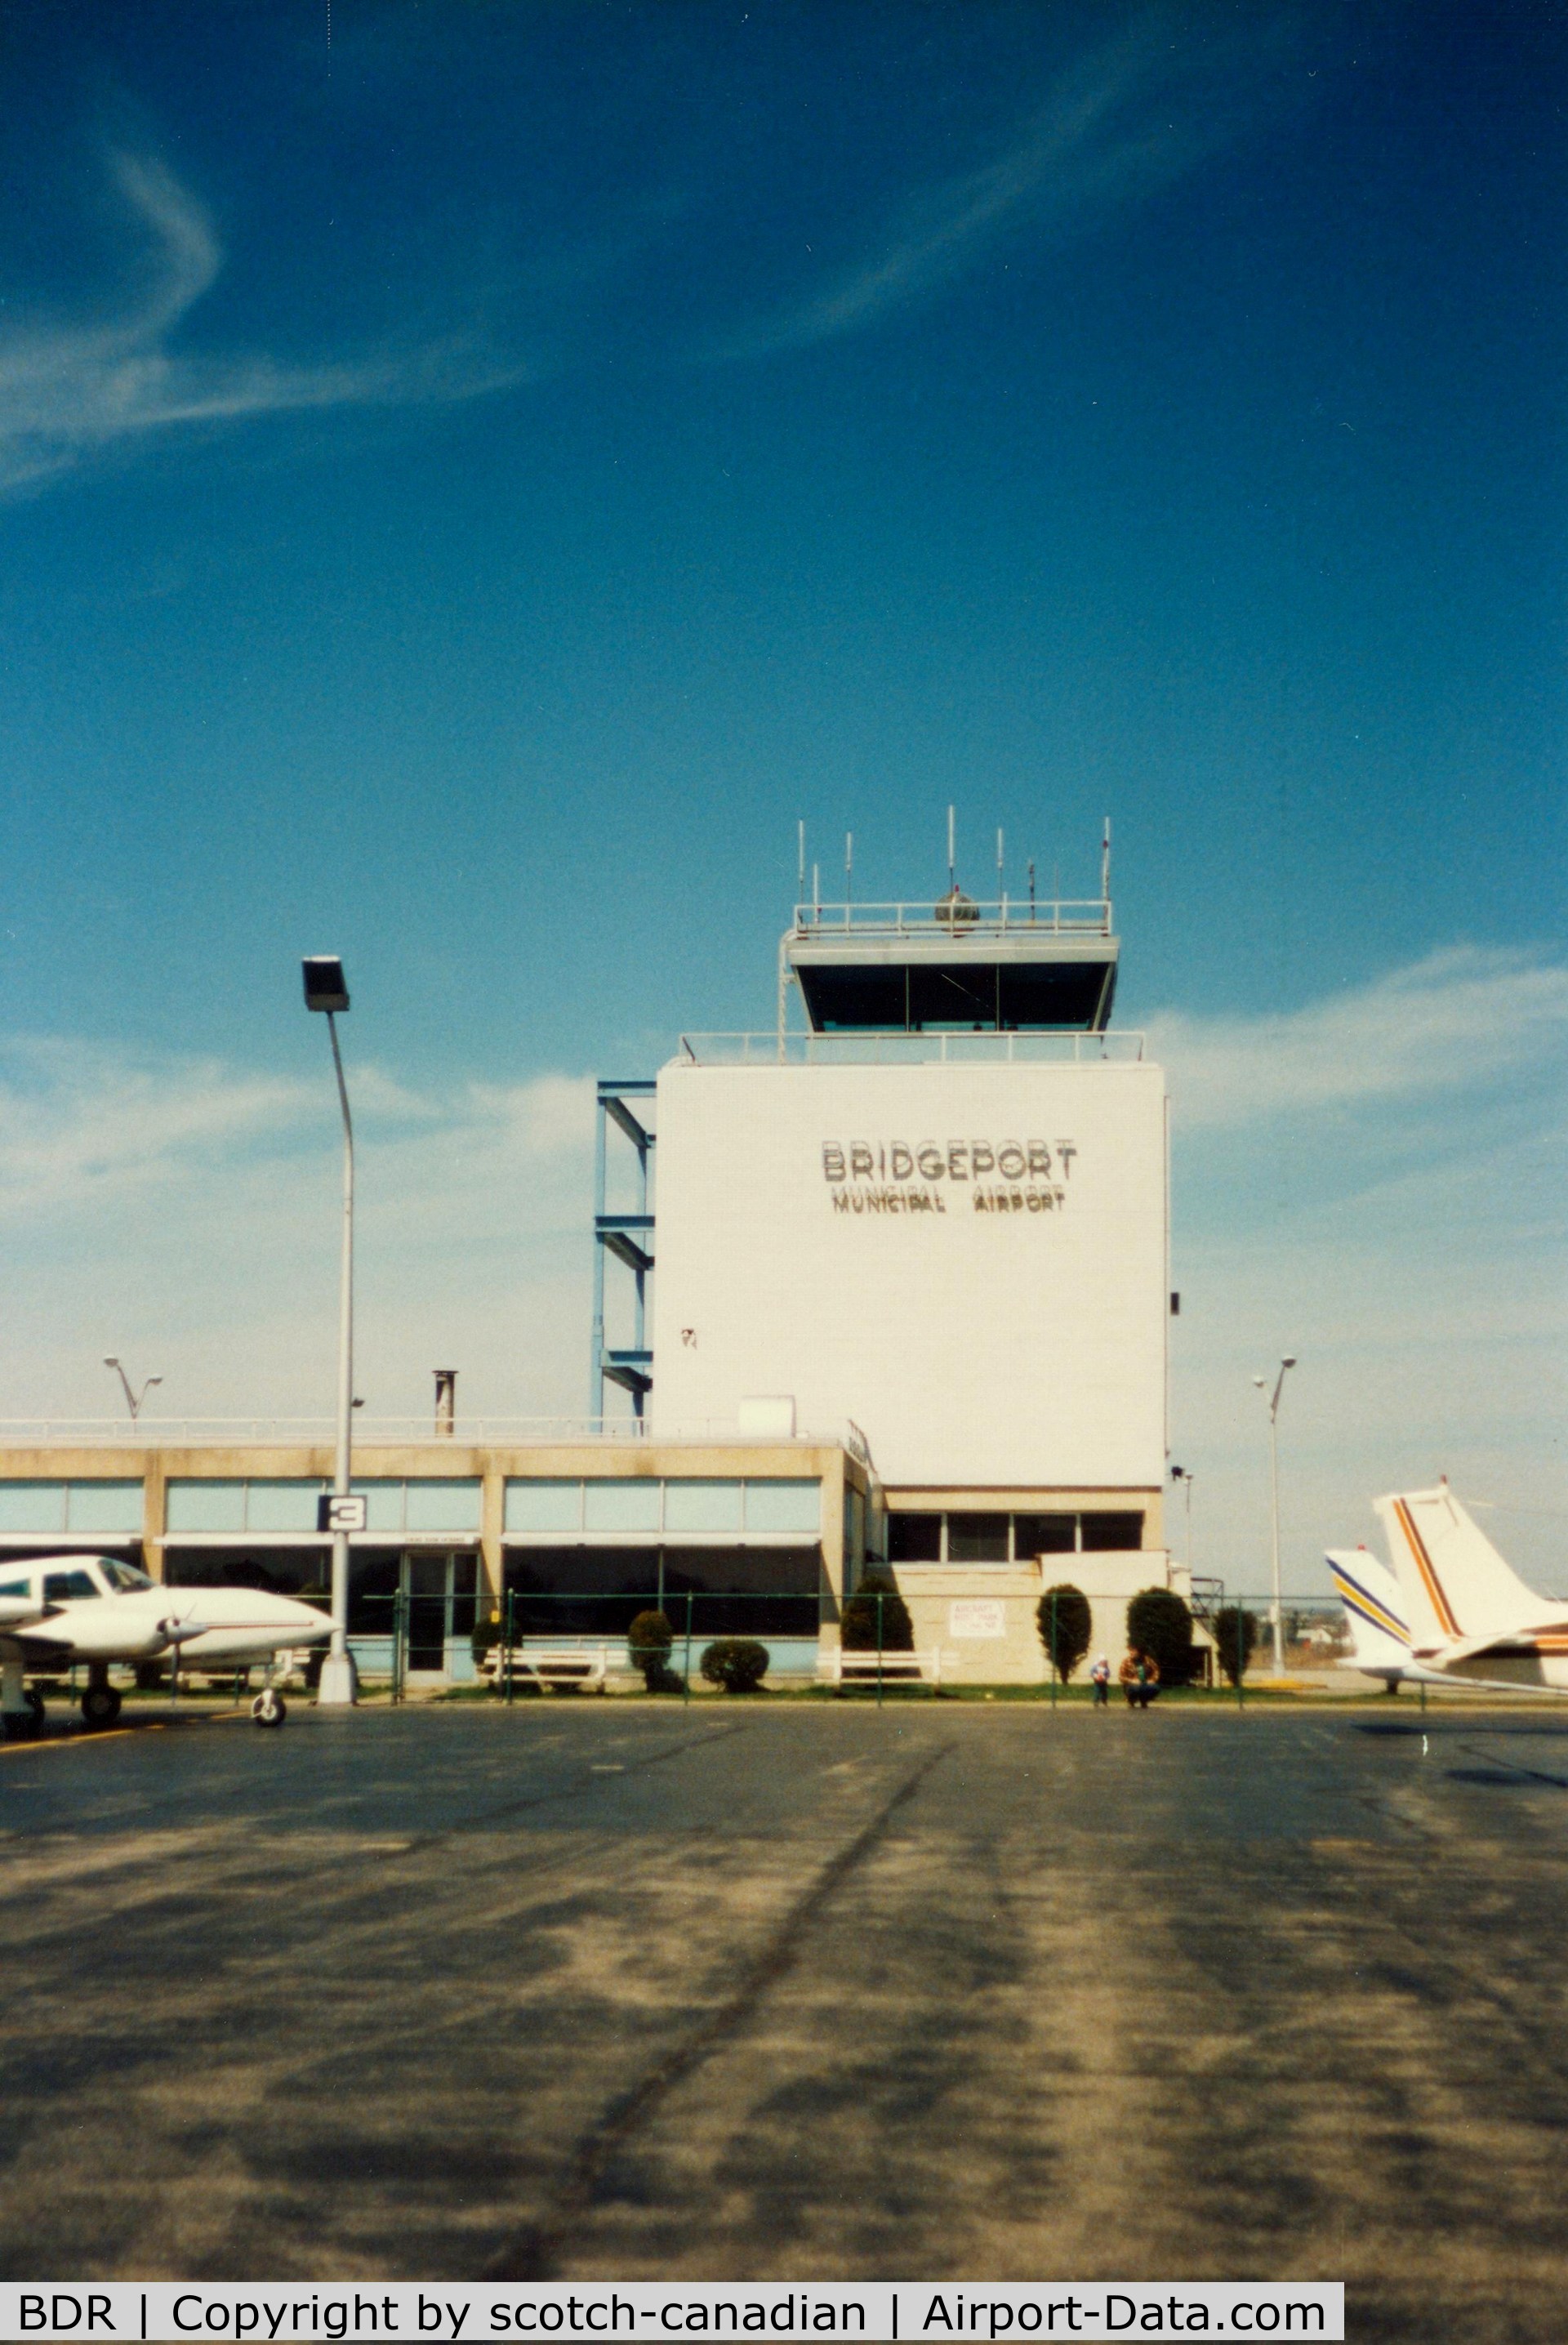 Igor I Sikorsky Memorial Airport (BDR) - Airport Control Tower at Bridgeport Municipal Airport, Bridgeport, CT - circa 1980's